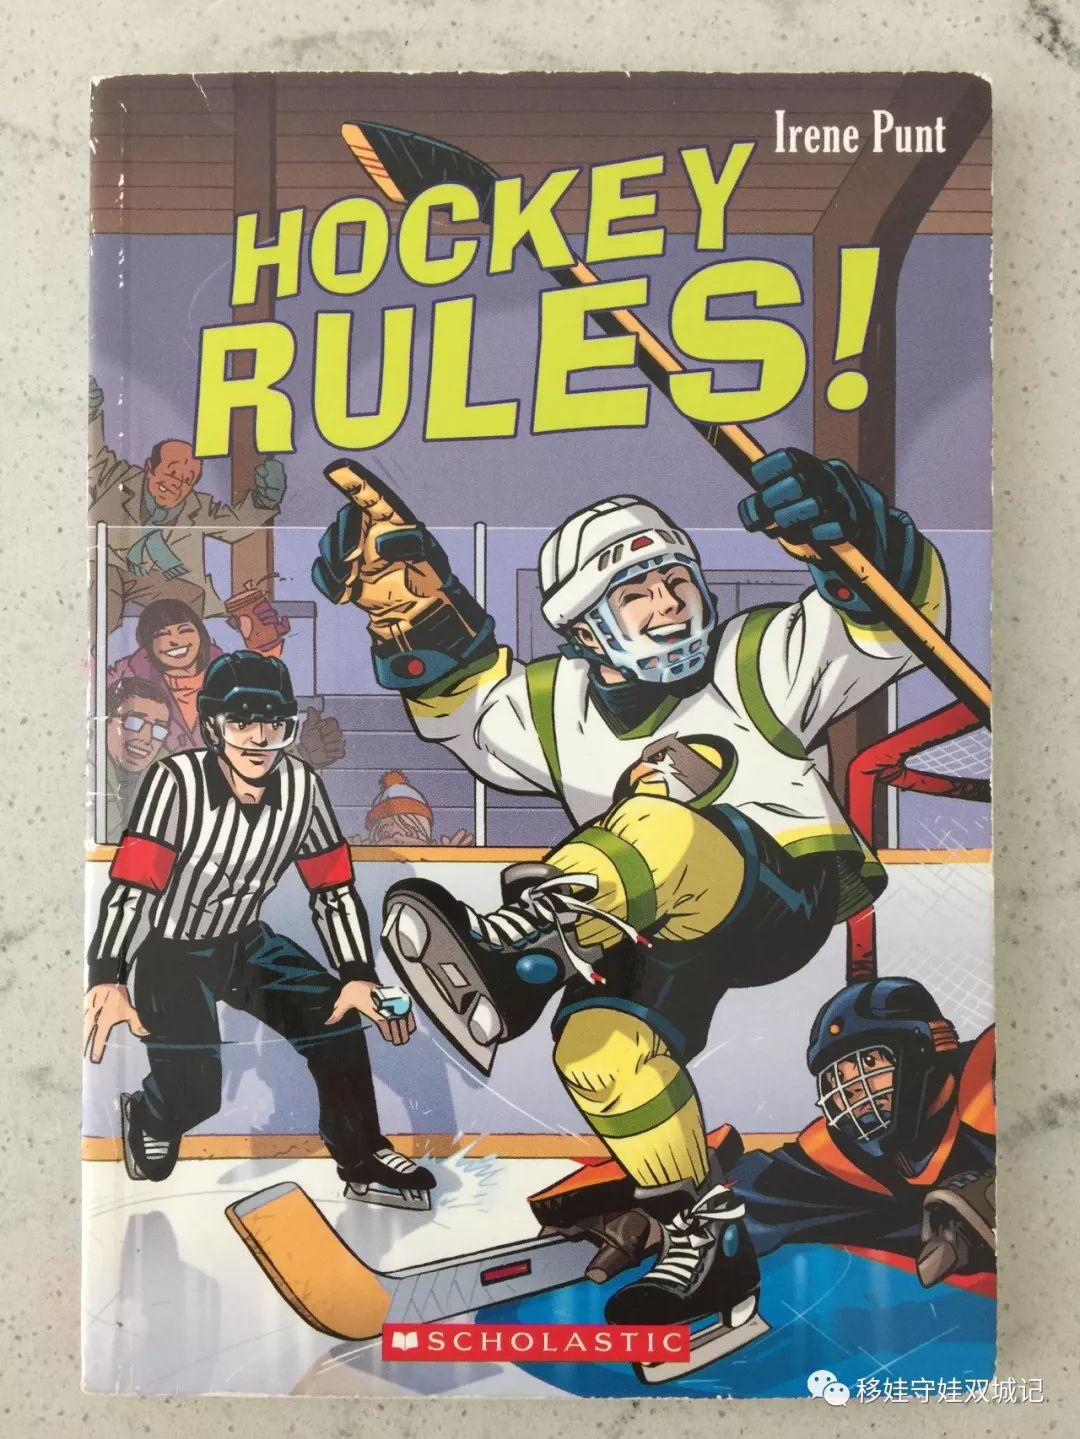 向大家再 推荐一本冰球规则书:《hockey rules!》,也是小奥喜欢的.